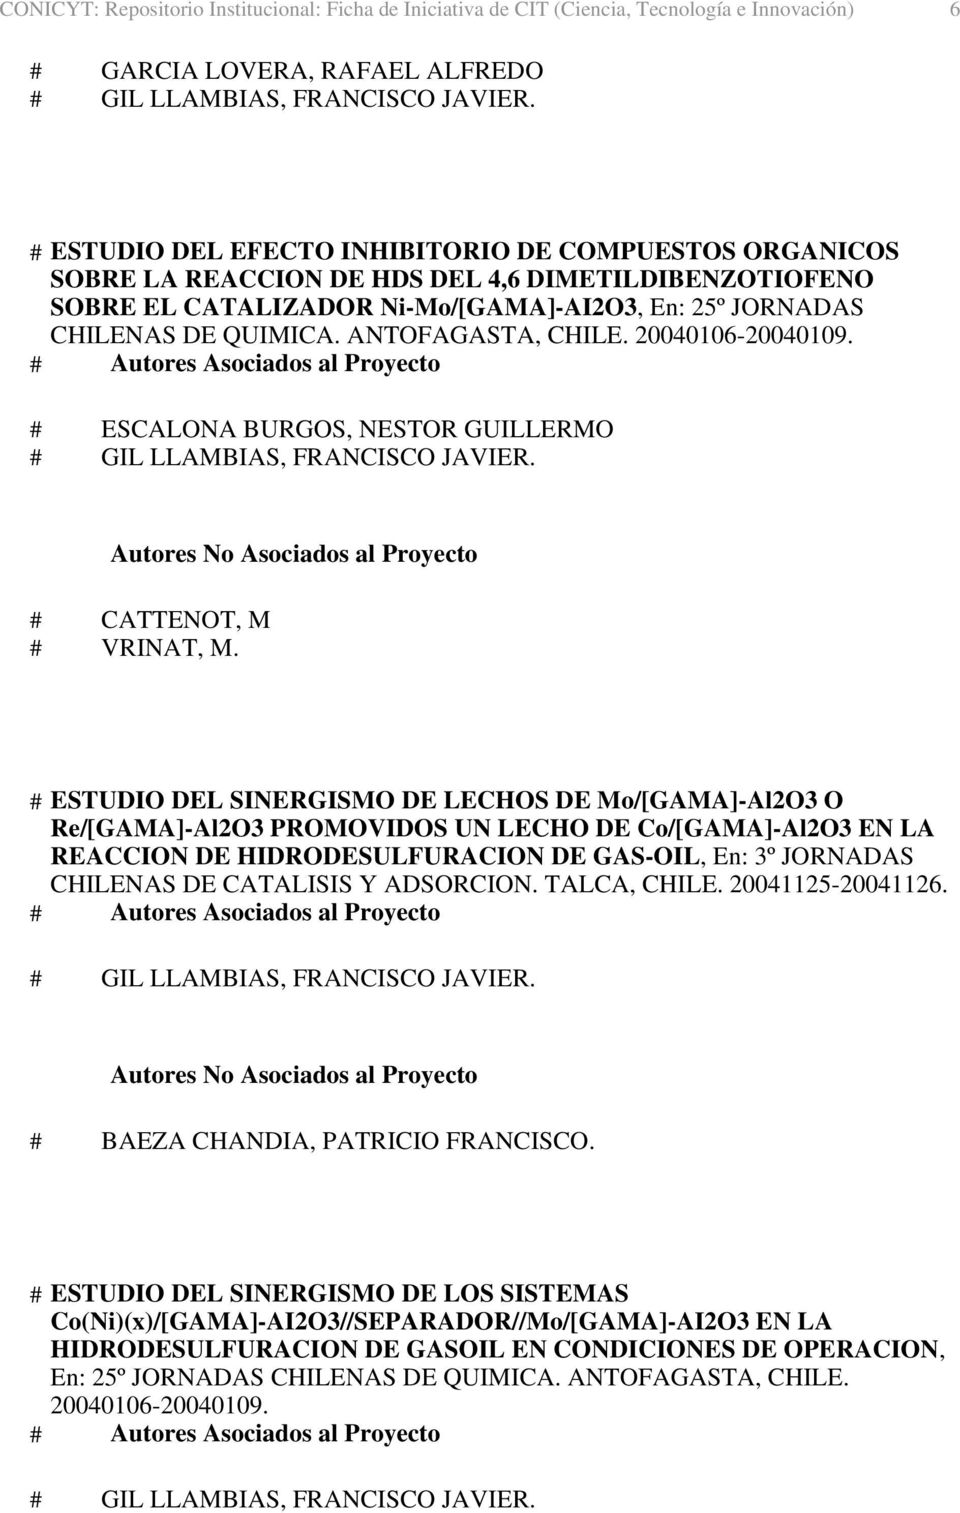 # ESTUDIO DEL SINERGISMO DE LECHOS DE Mo/[GAMA]-Al2O3 O Re/[GAMA]-Al2O3 PROMOVIDOS UN LECHO DE Co/[GAMA]-Al2O3 EN LA REACCION DE HIDRODESULFURACION DE GAS-OIL, En: 3º JORNADAS CHILENAS DE CATALISIS Y